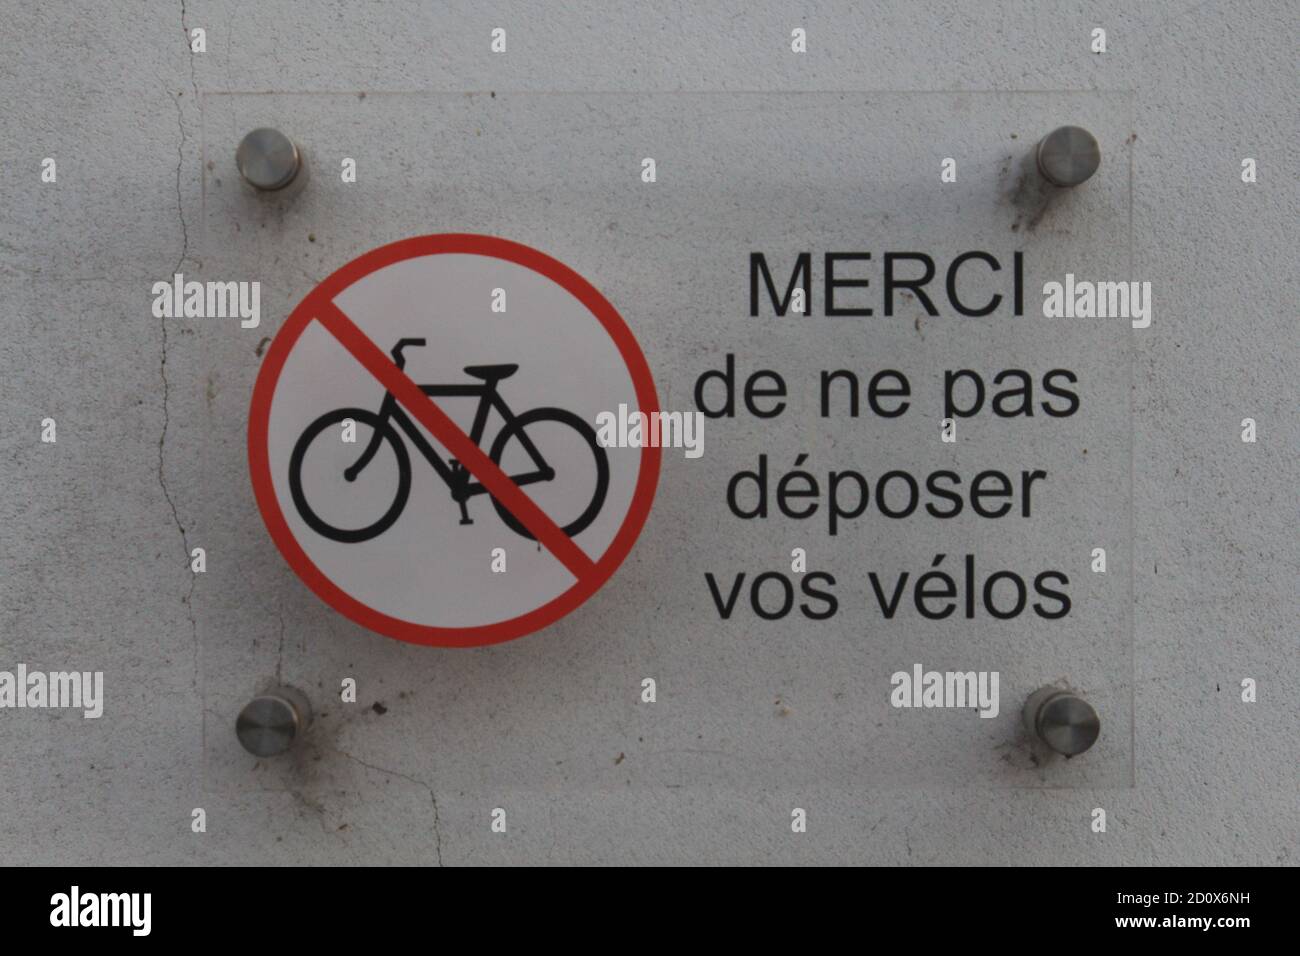 Ne pas déposer vos vélos - ile de Ré Foto Stock